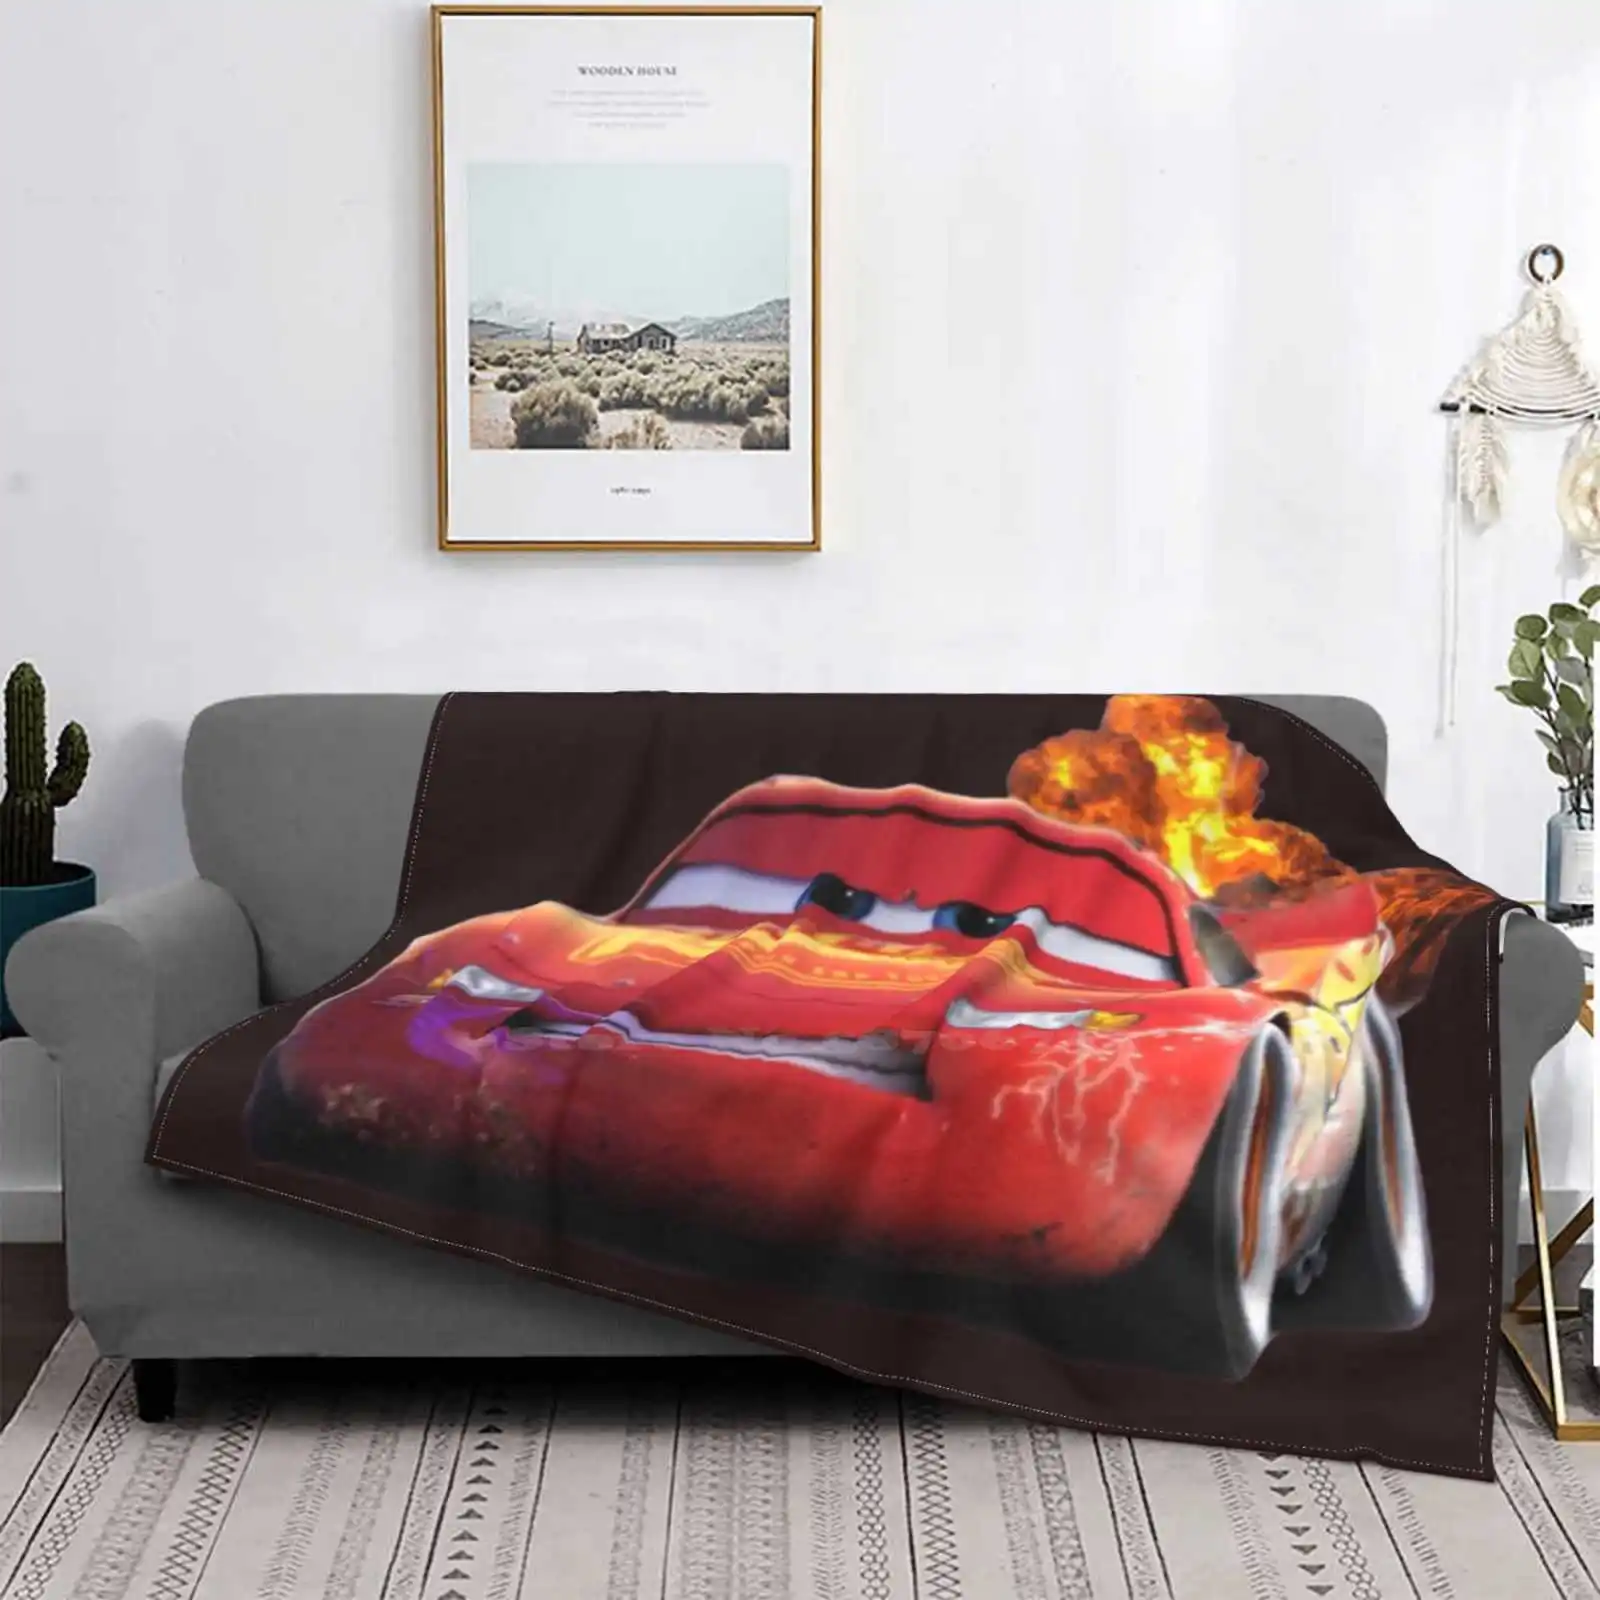 

Легкий ning Mcqueen, креативный дизайн, легкое тонкое мягкое фланелевое одеяло, автомобиль Kachow Explosion 95, красный, определенный гоночный